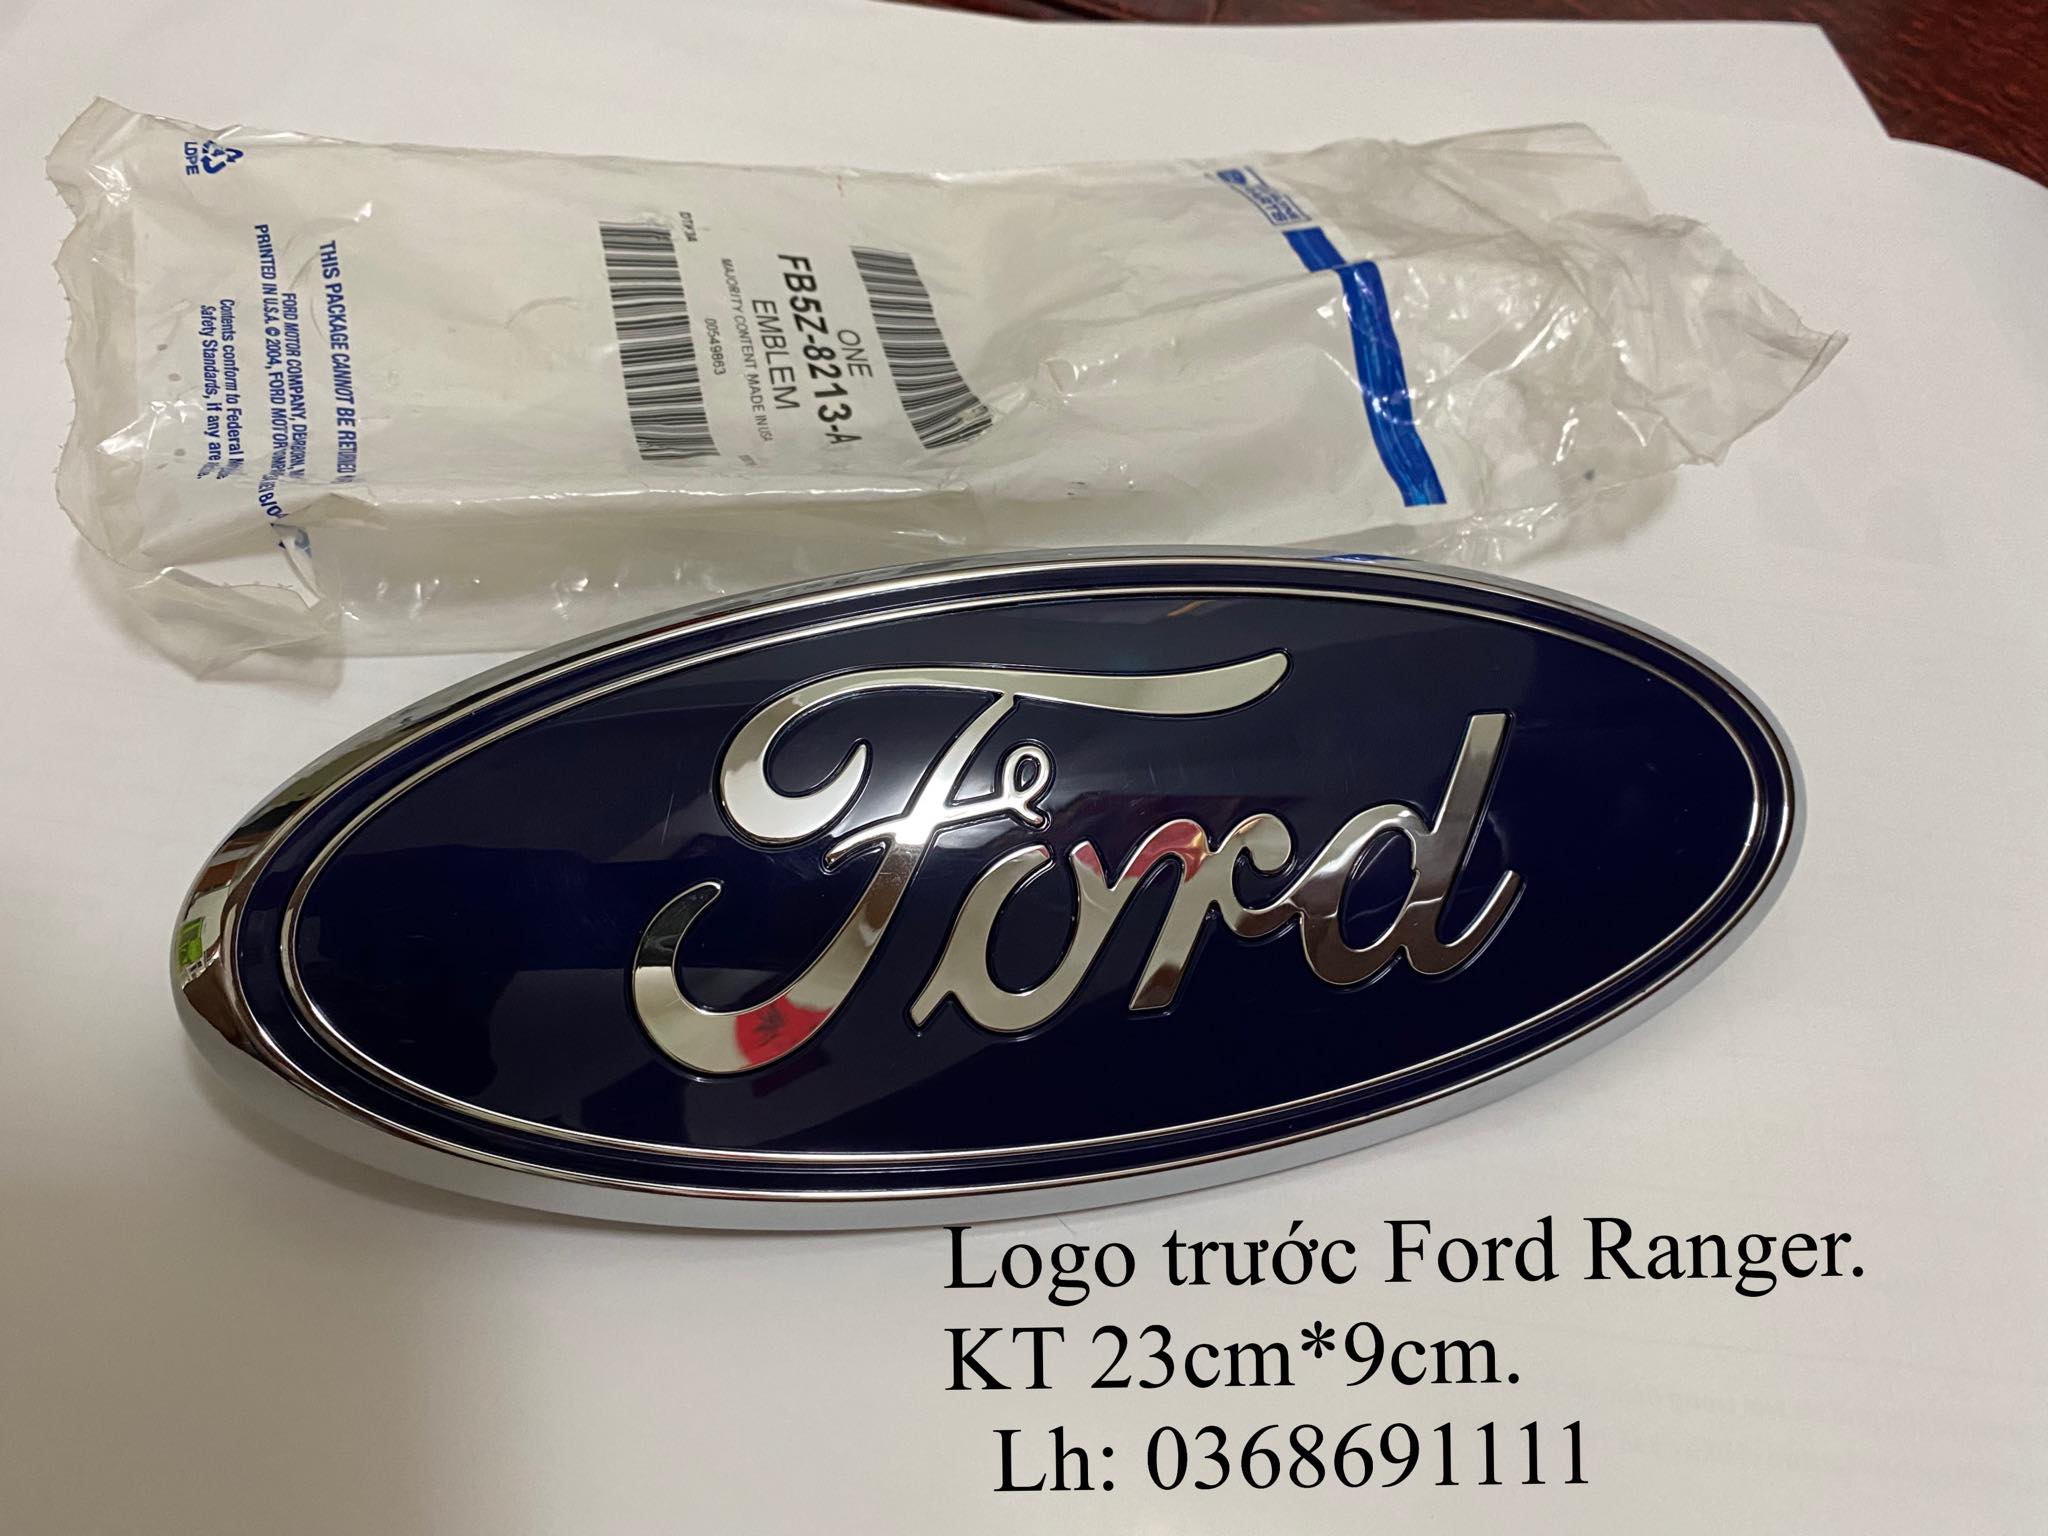 Hướng dẫn cách thiết kế logo ford ranger độc đáo và thu hút sự chú ý từ khách hàng